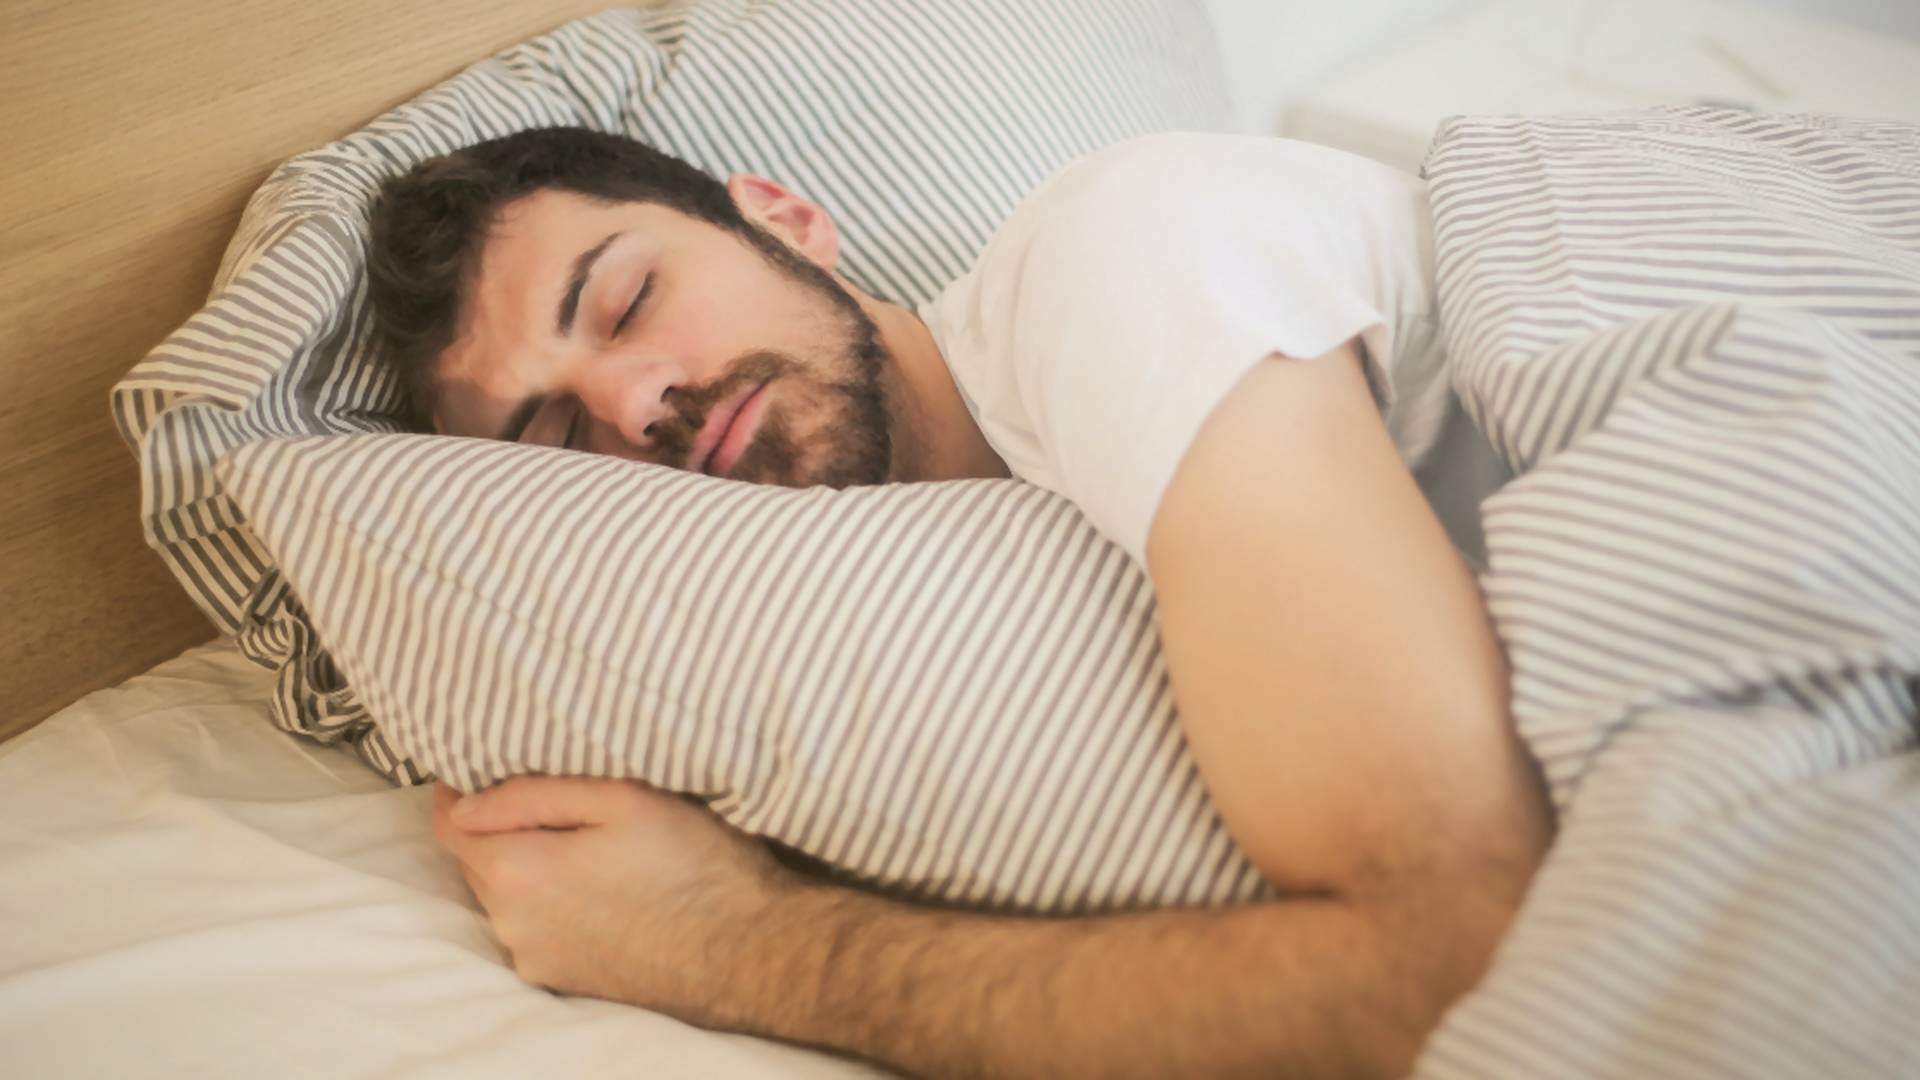 Môže dlhý spánok škodiť zdraviu? Vedci sa v odpovediach rozchádzajú